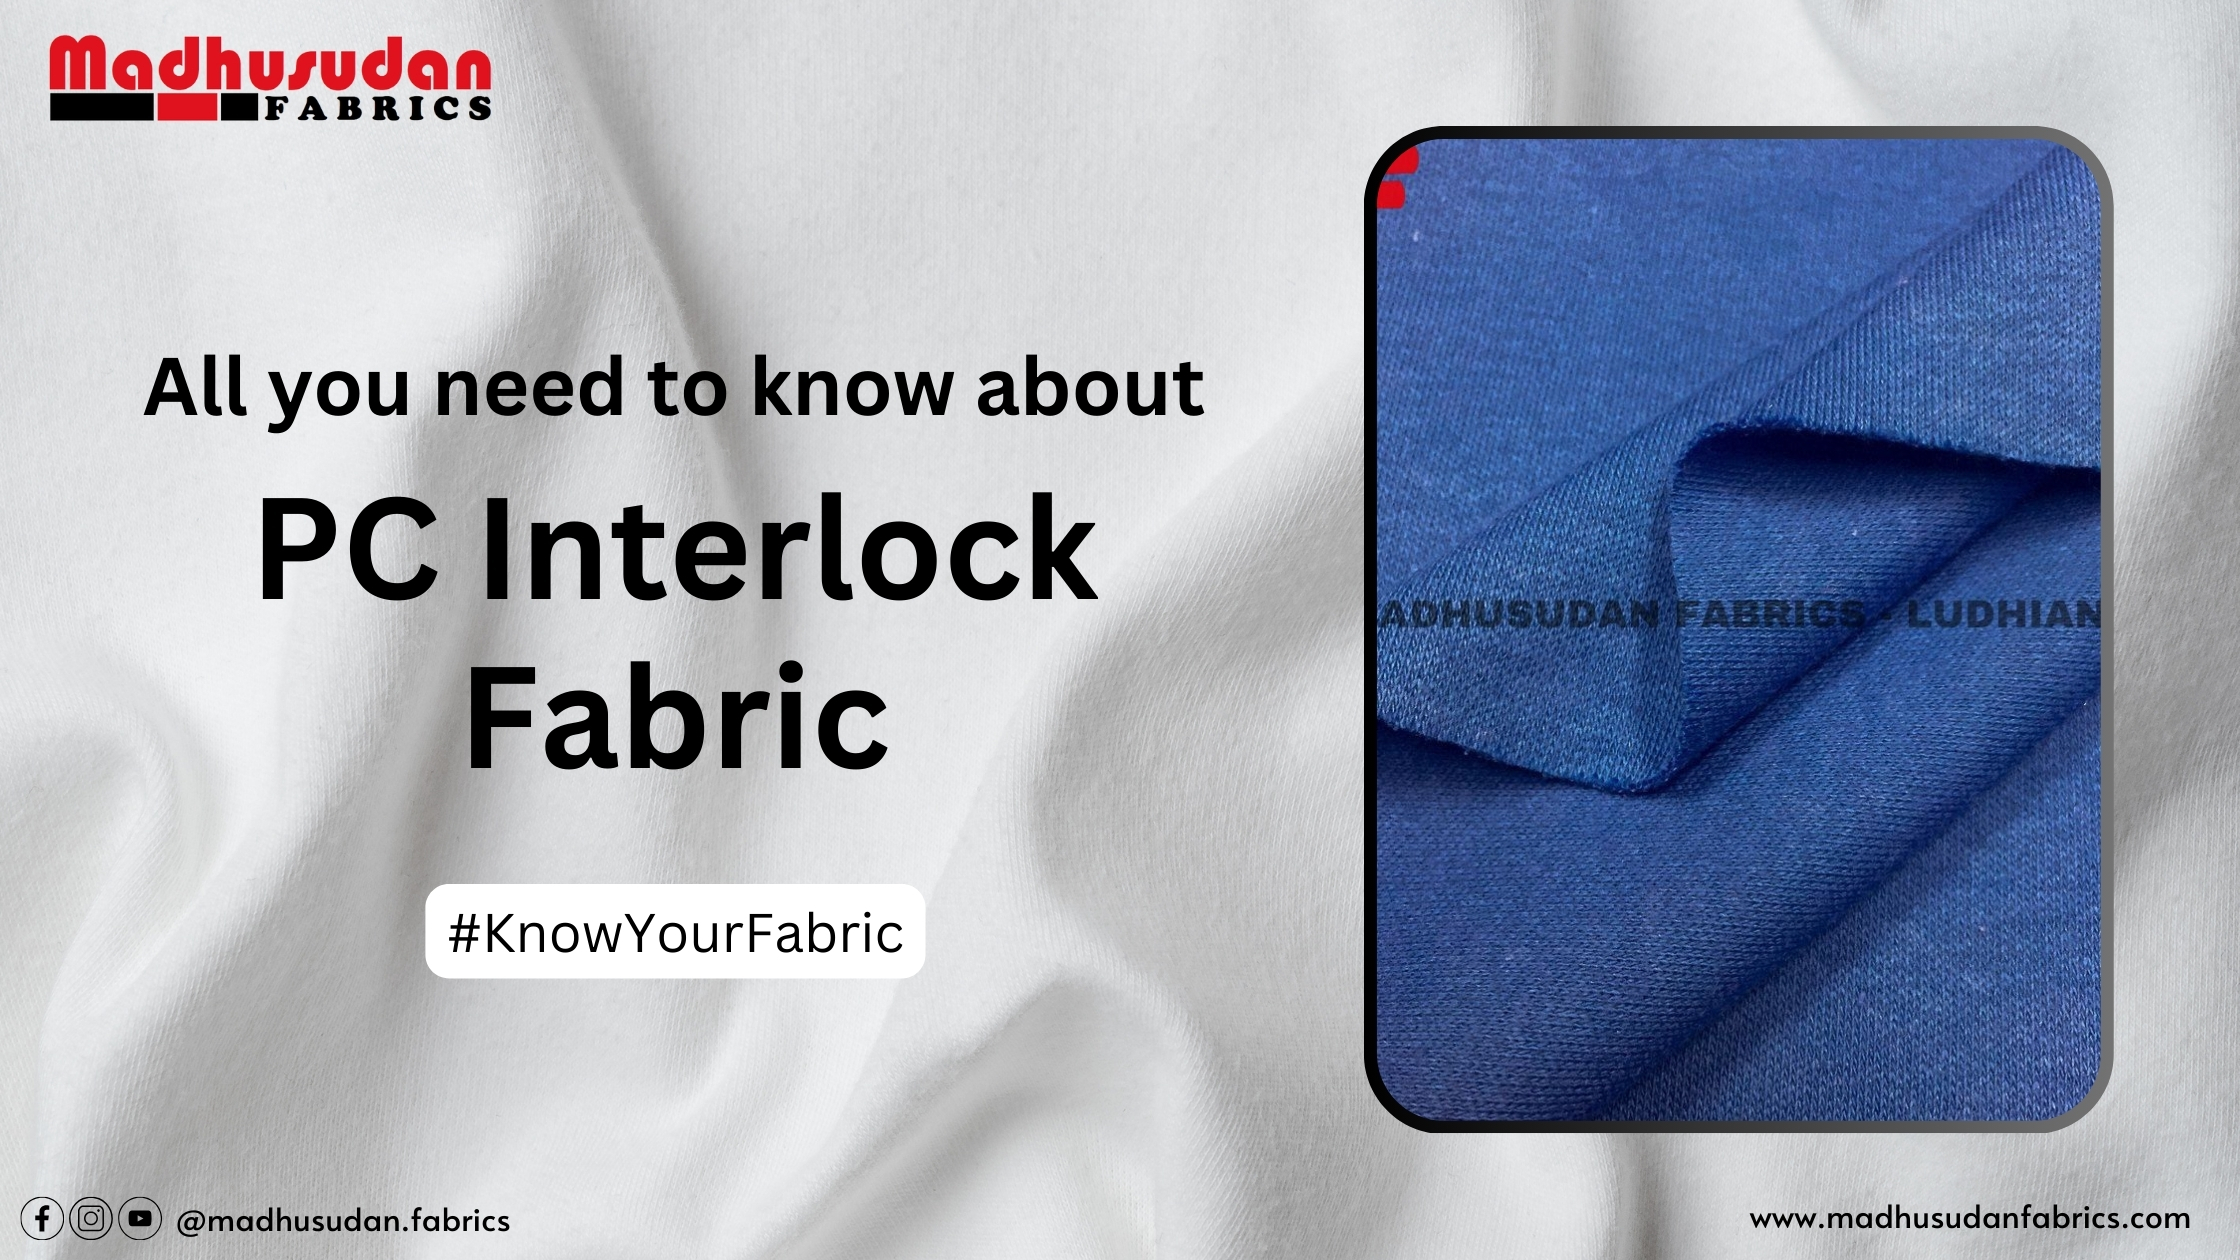 PC Interlock fabric